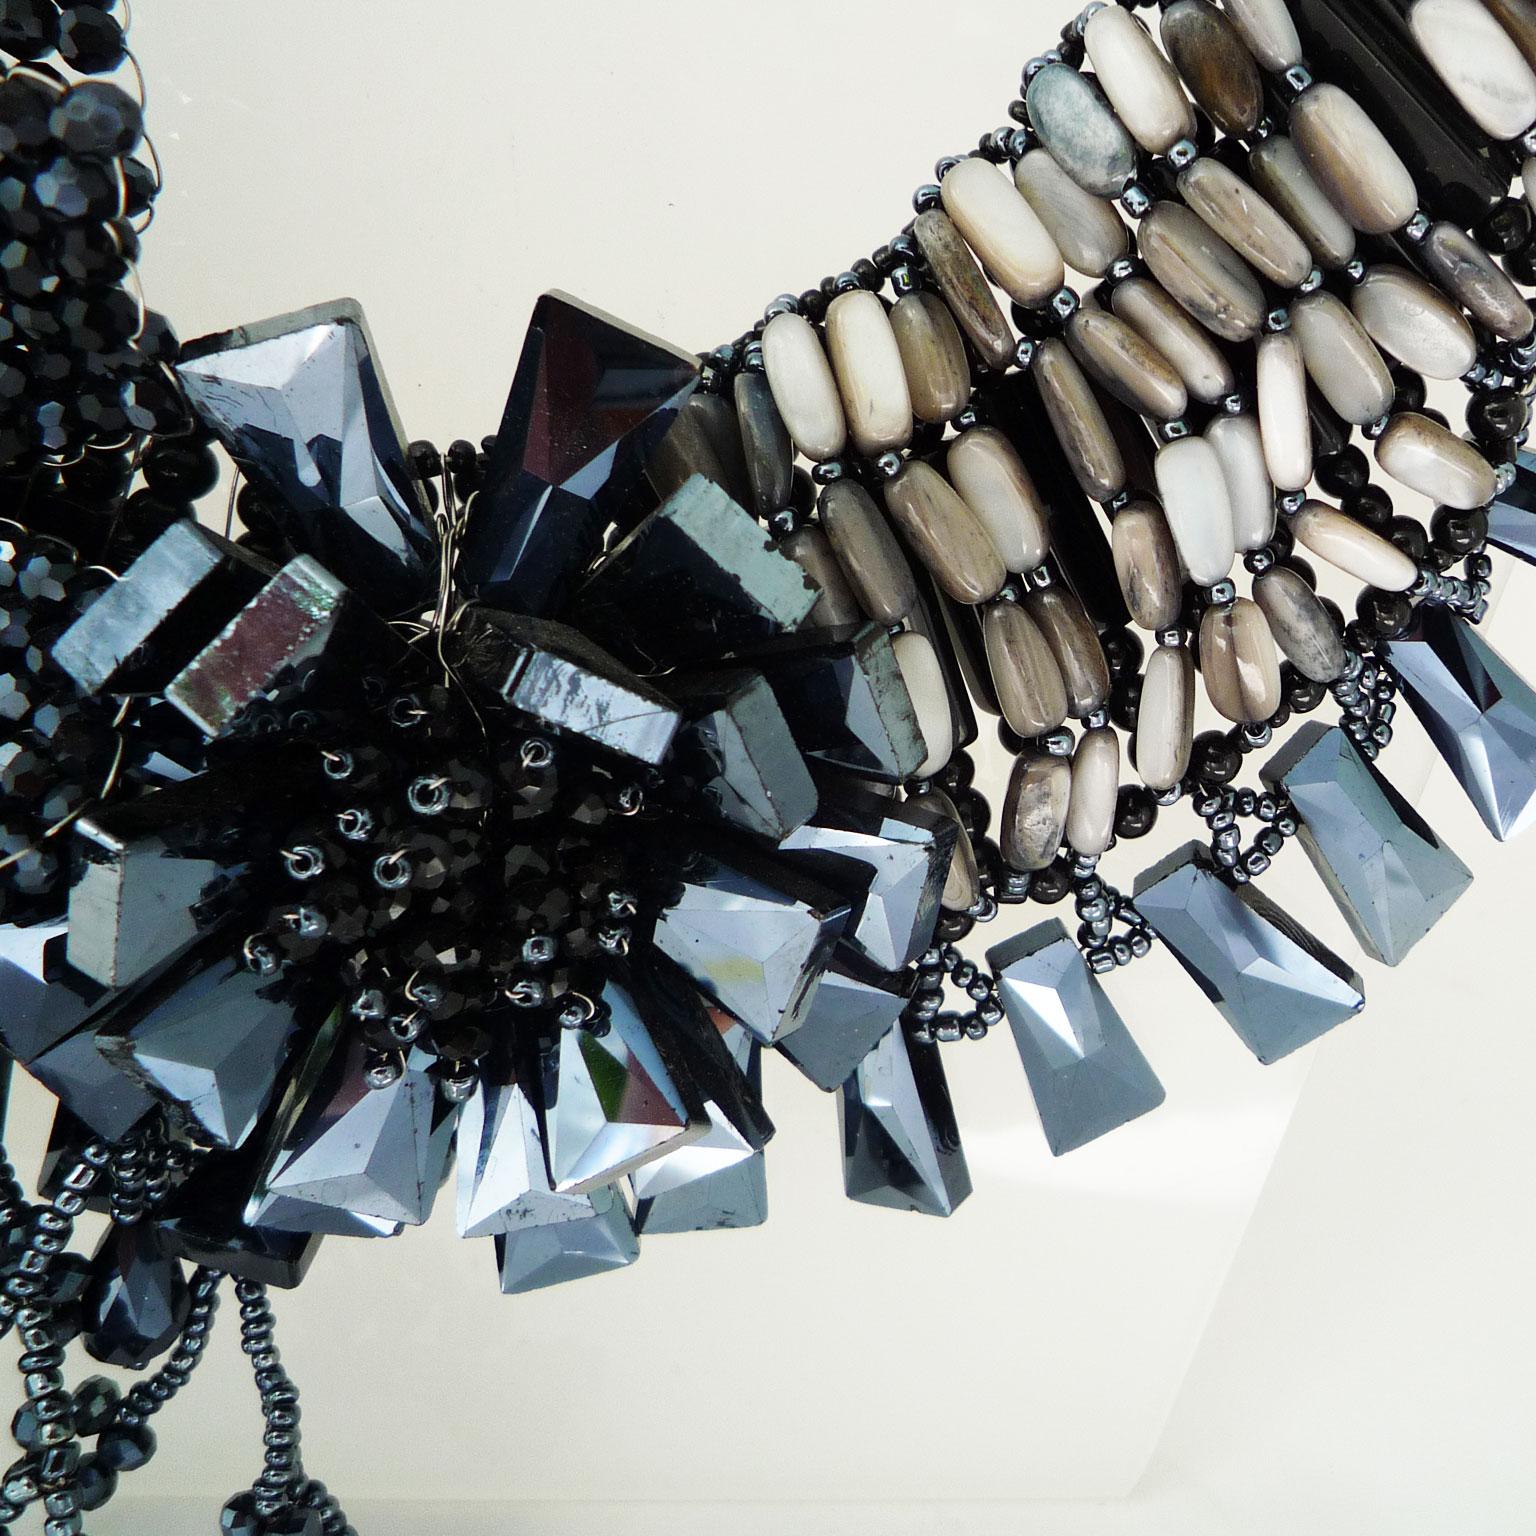 Halskette aus schwarzem Kalkstein und schwarzen Swarovski-Perlen
Handgefertigte Kette aus schwarzem Kalkstein. An die Kette wurden kunstvoll florale Elemente geknüpft. 
Die Farbe von reinem, unverfälschtem Kalkstein ist weiß, während die Anwesenheit